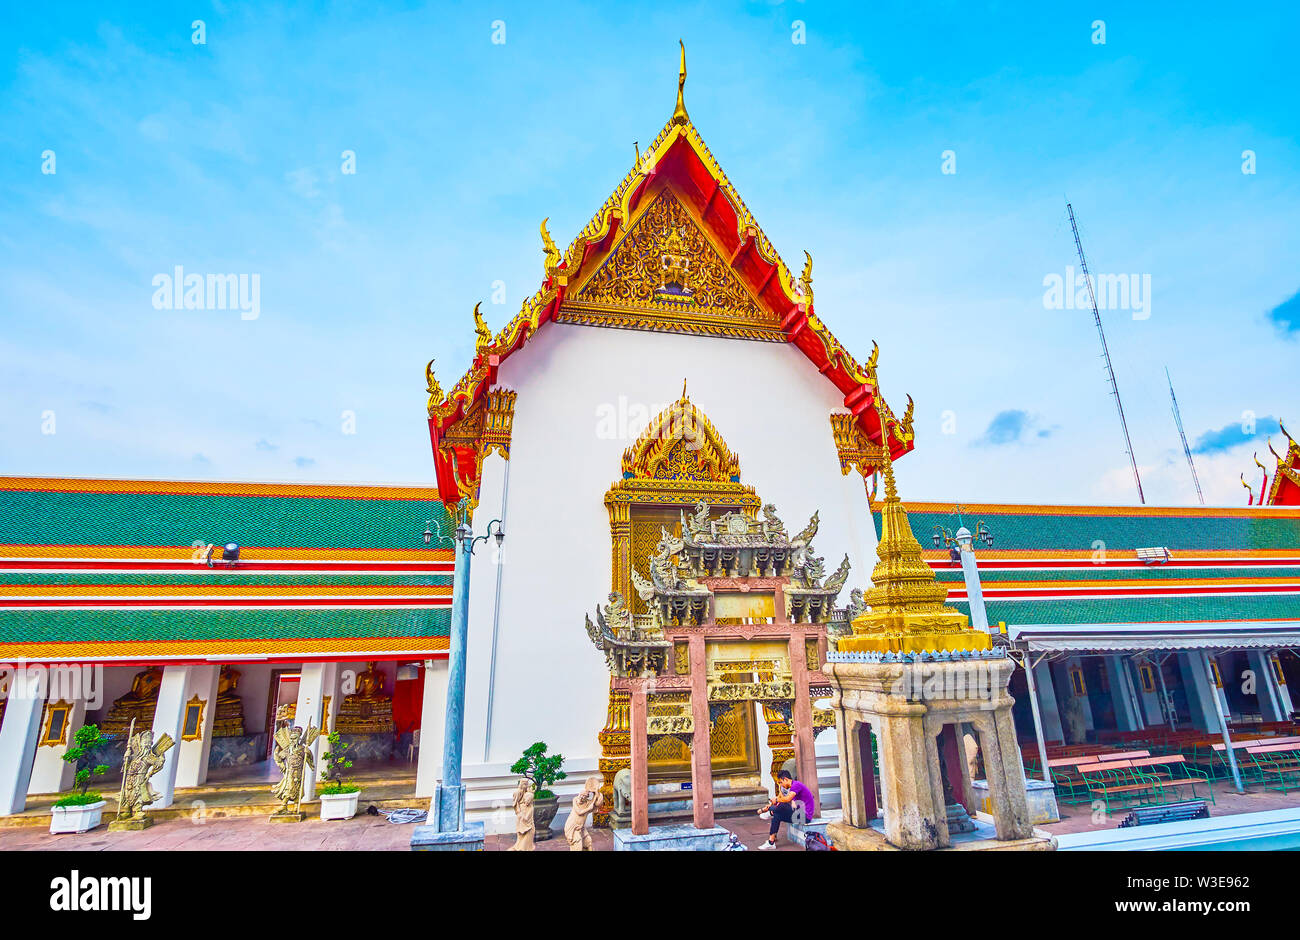 BANGKOK, THAILAND - 22 April, 2019: Die Tore, in den Hof des Phra Ubosot Tempel sind mit geschnitzten chinesischen Arch eingerichtet und überdachte Galerie mit s Stockfoto